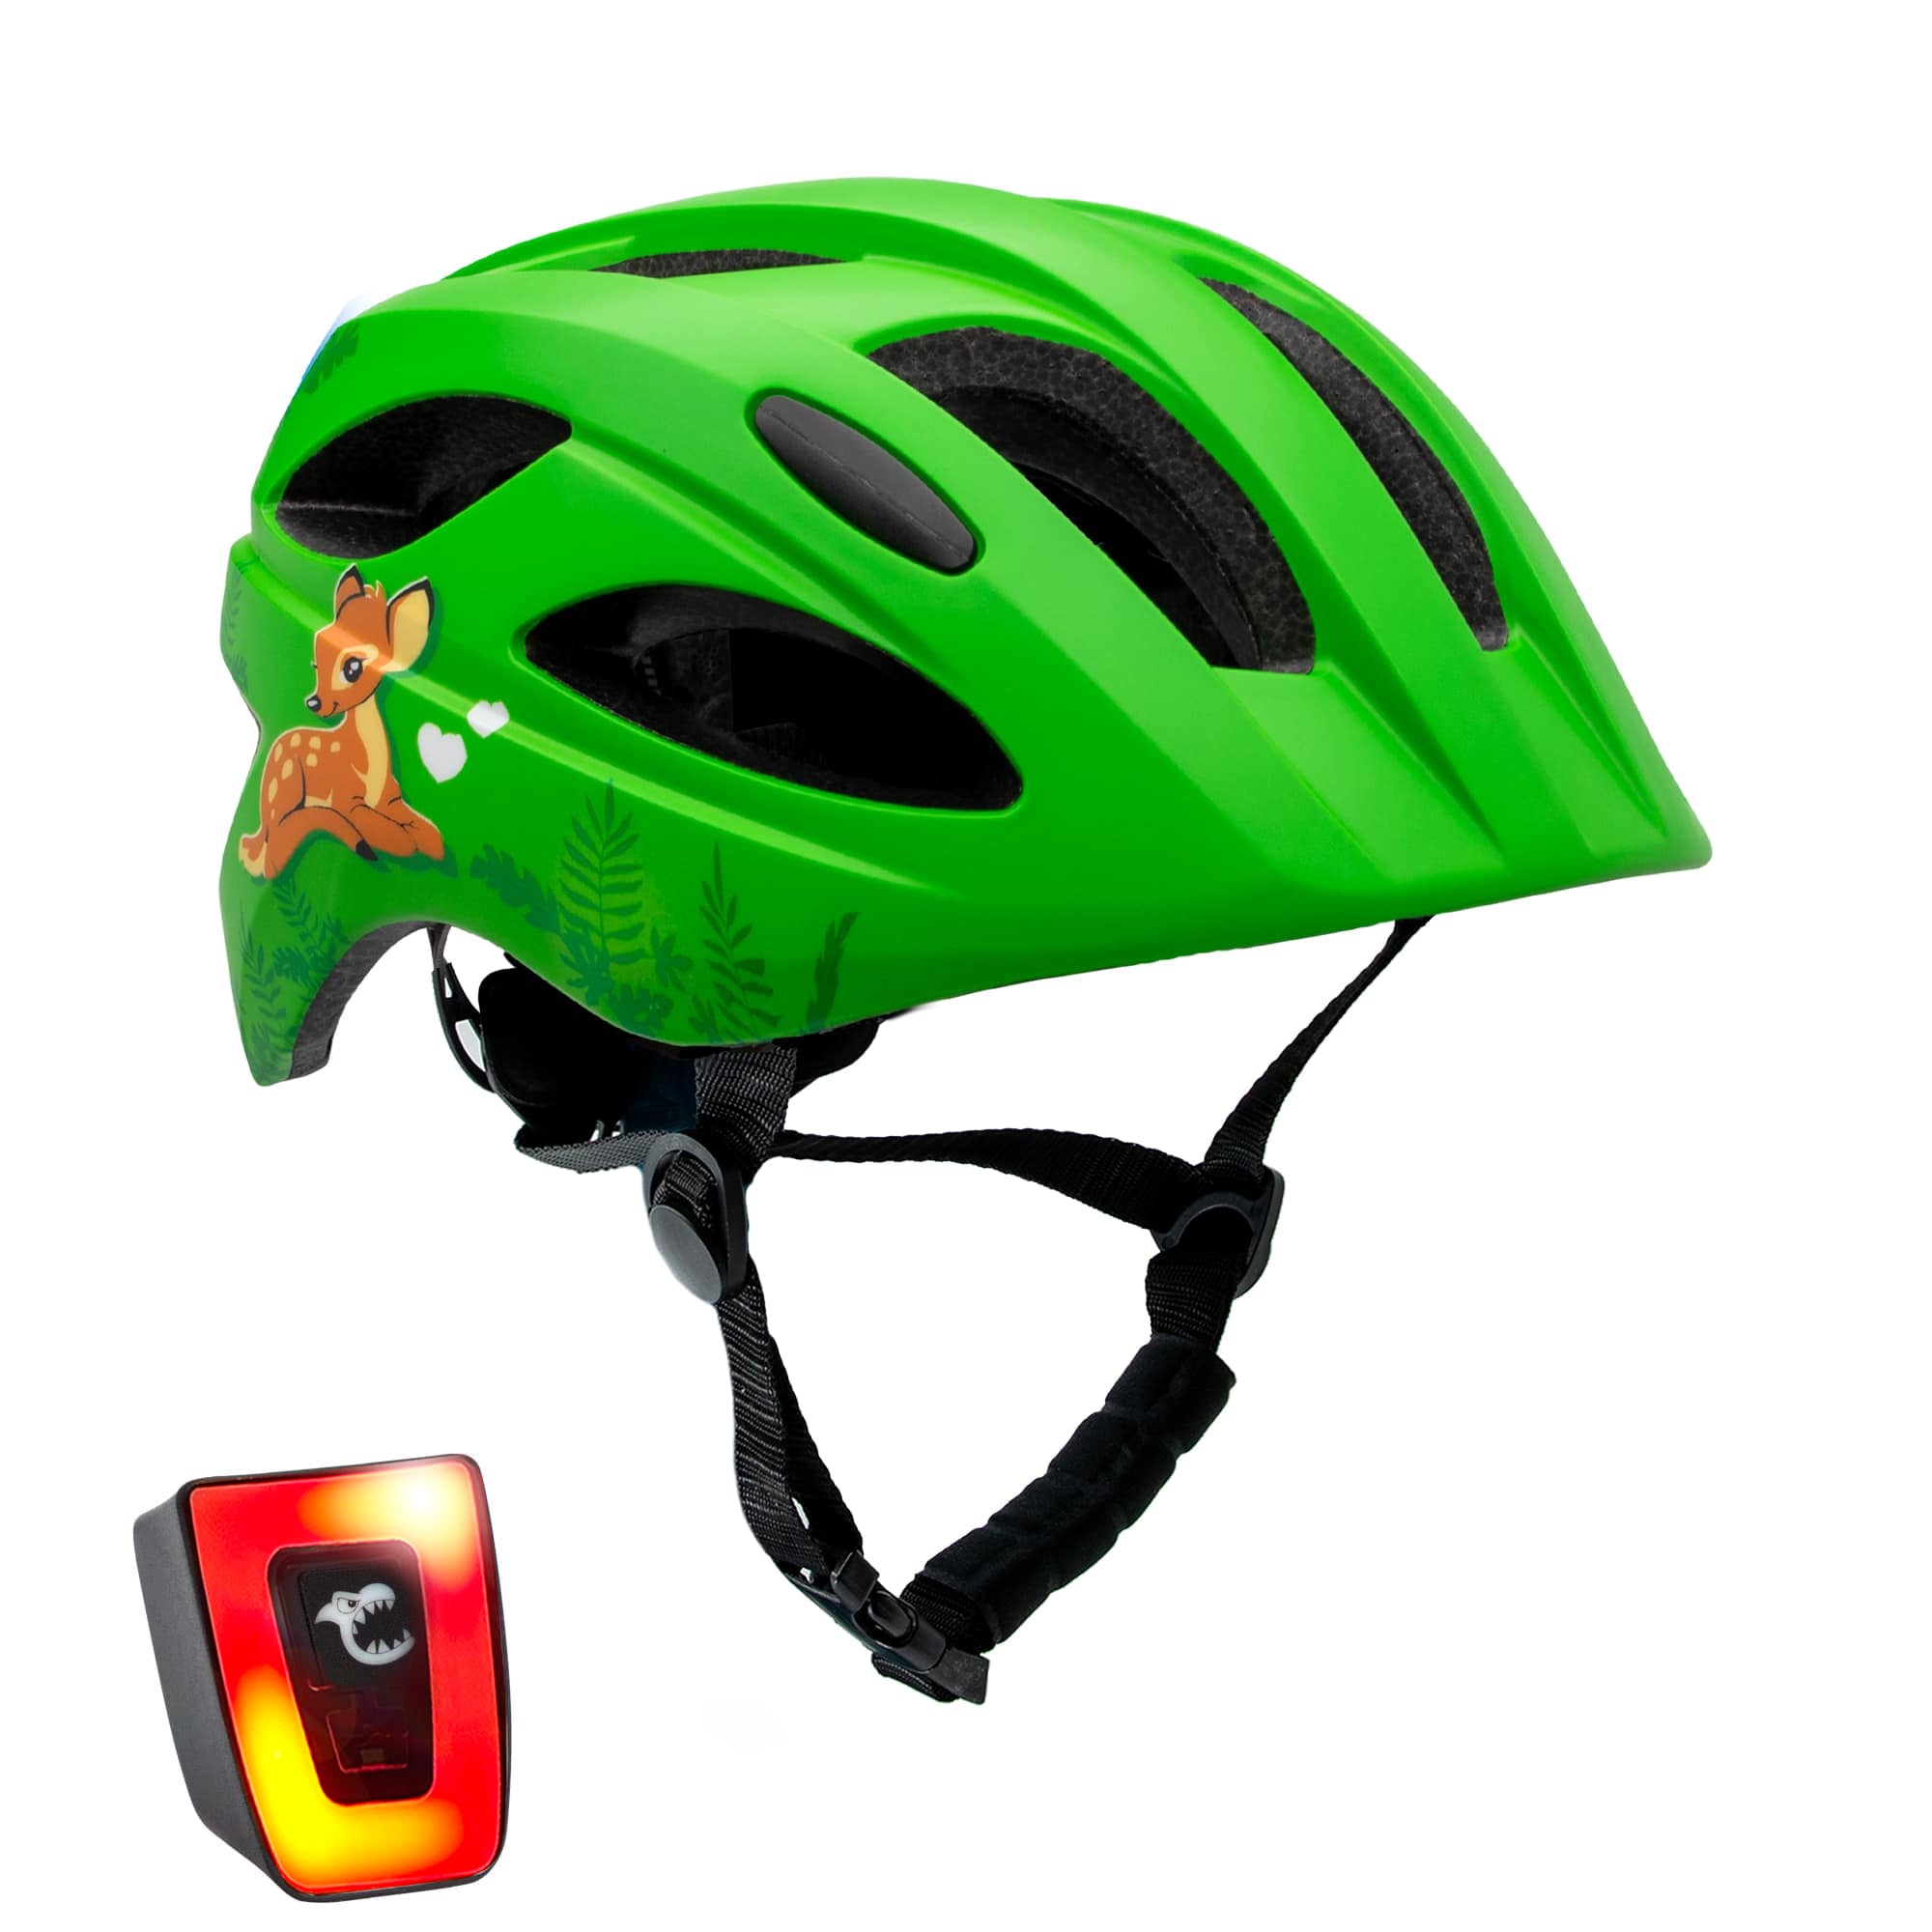 Cute Bicycle Helmet - Green Pack